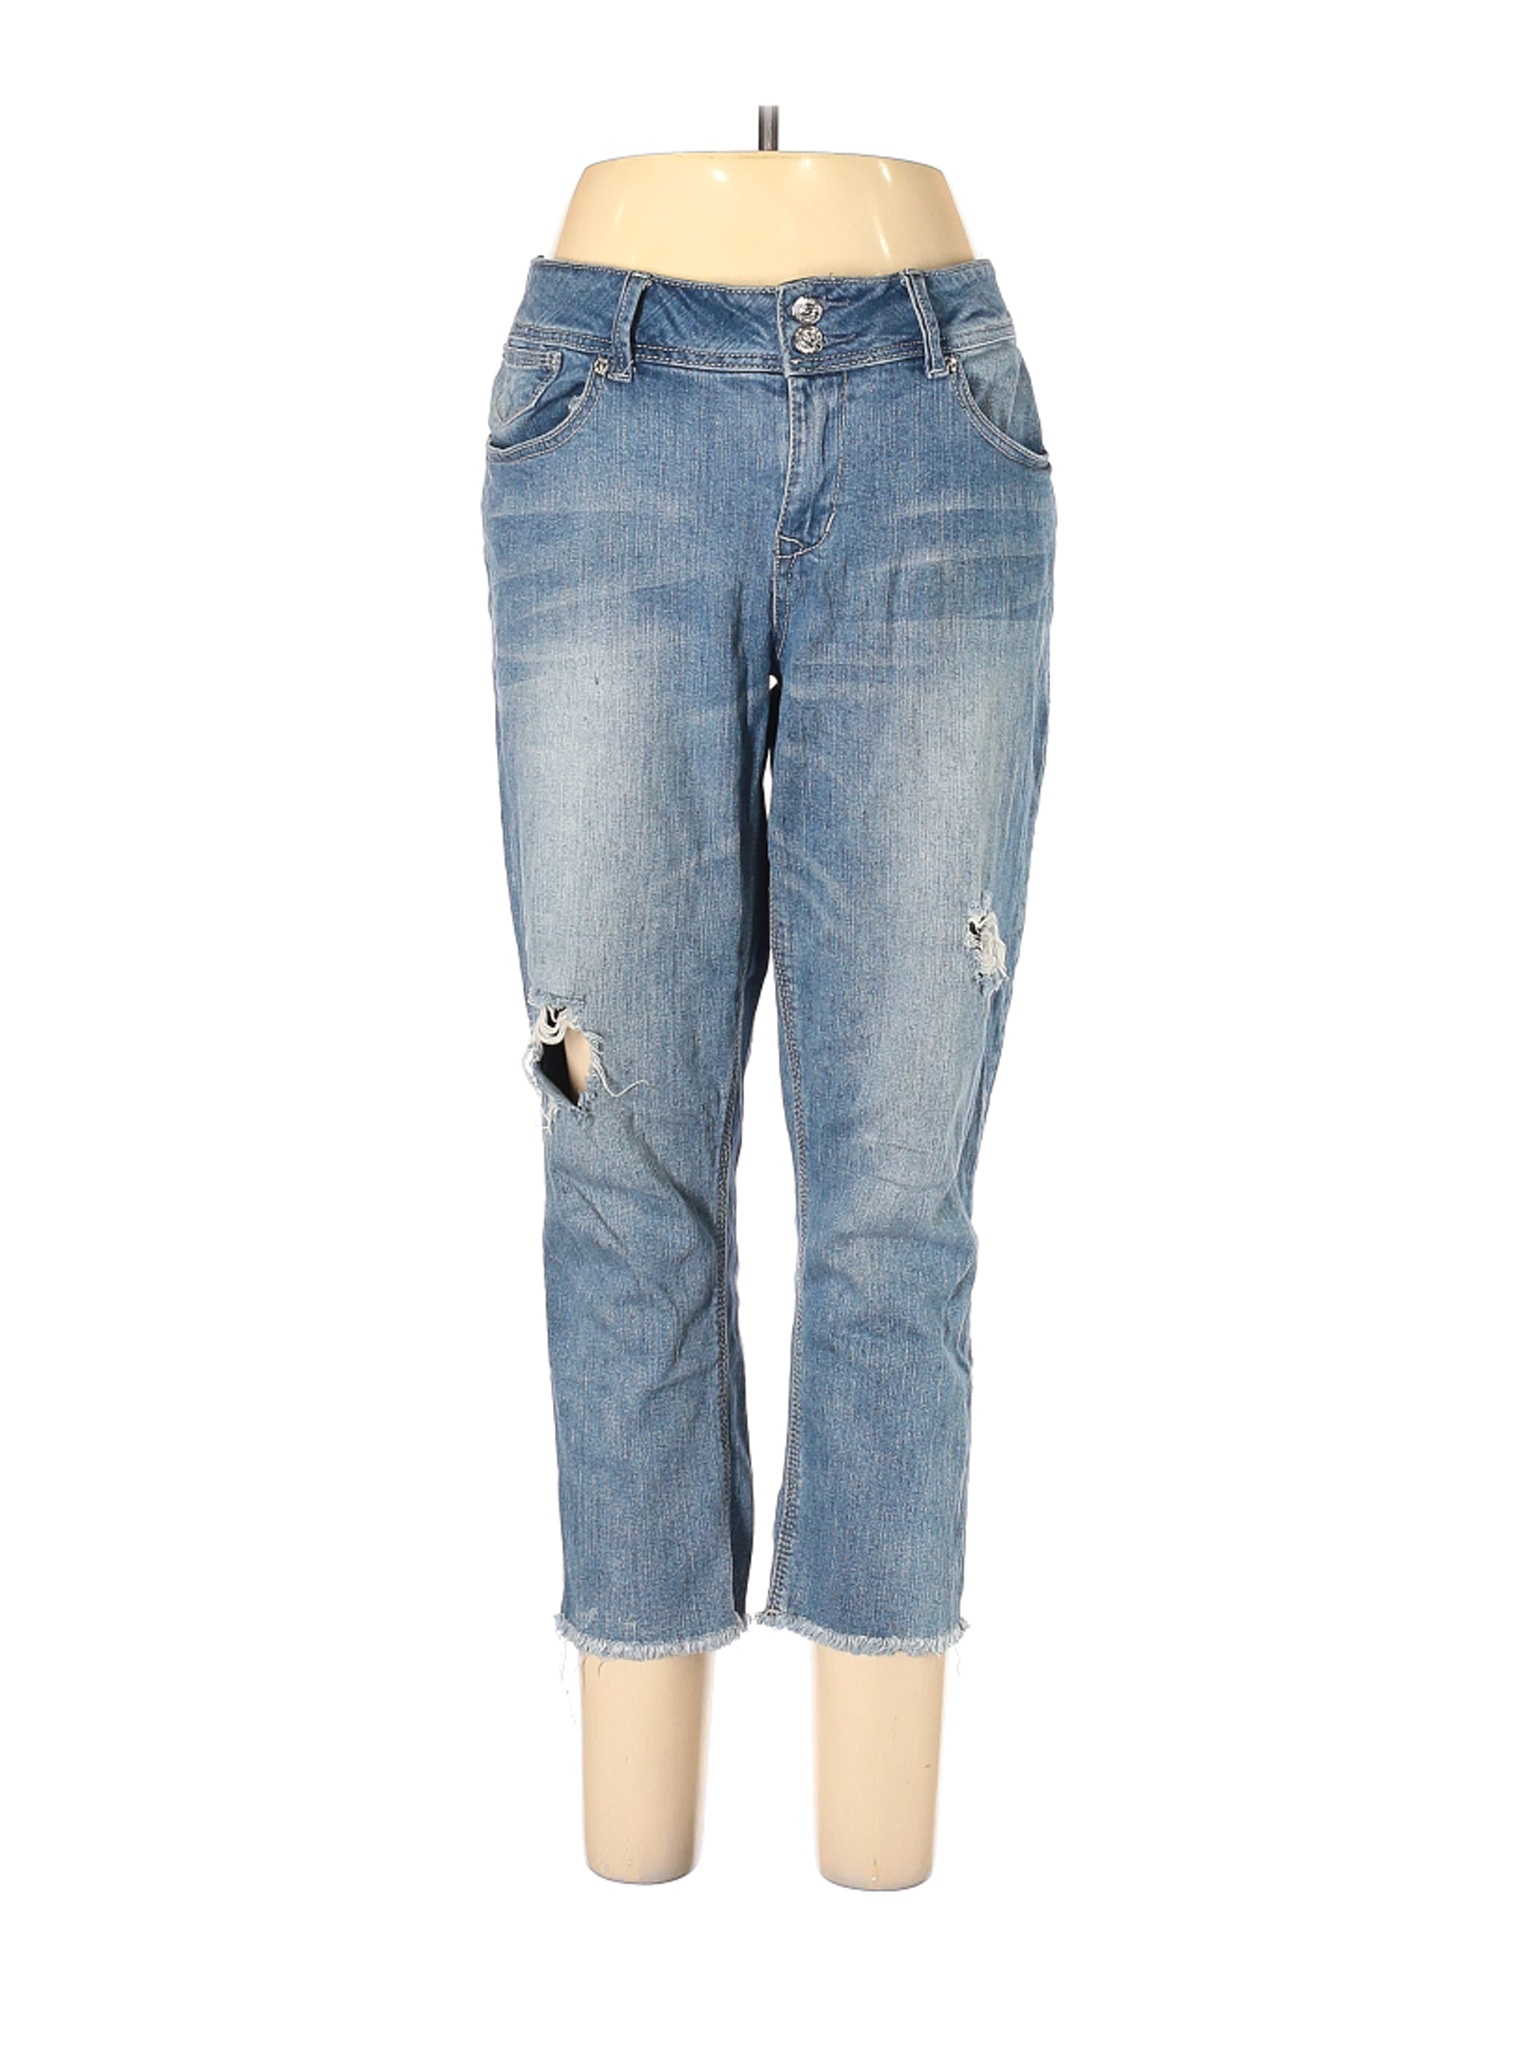 Seven7 Women Blue Jeans 10 | eBay